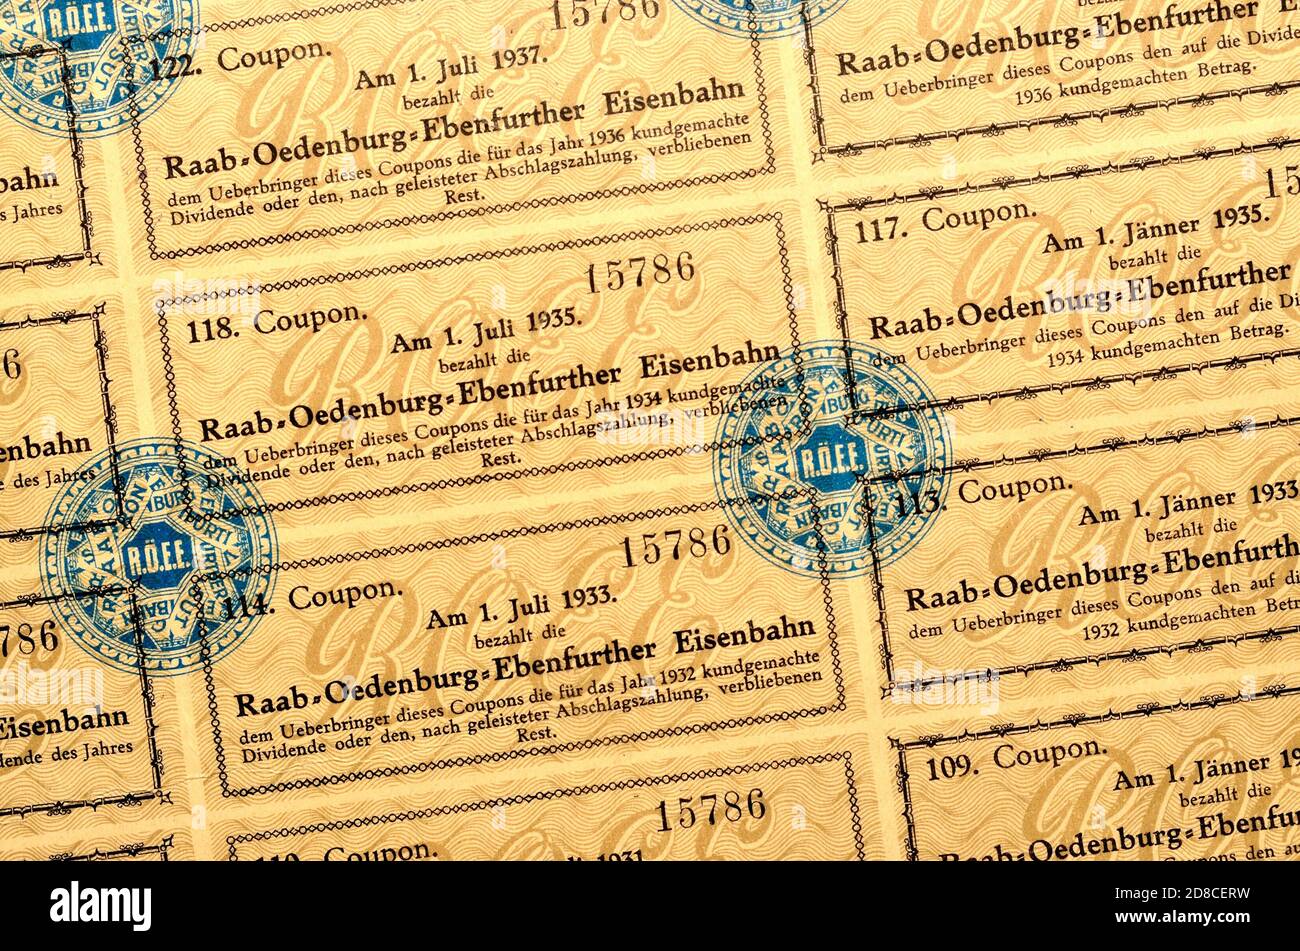 Certificado de acciones alemán/húngaro para el ferrocarril Győr-Sopron-Ebenfurt (1876) cupones de dividendos Foto de stock